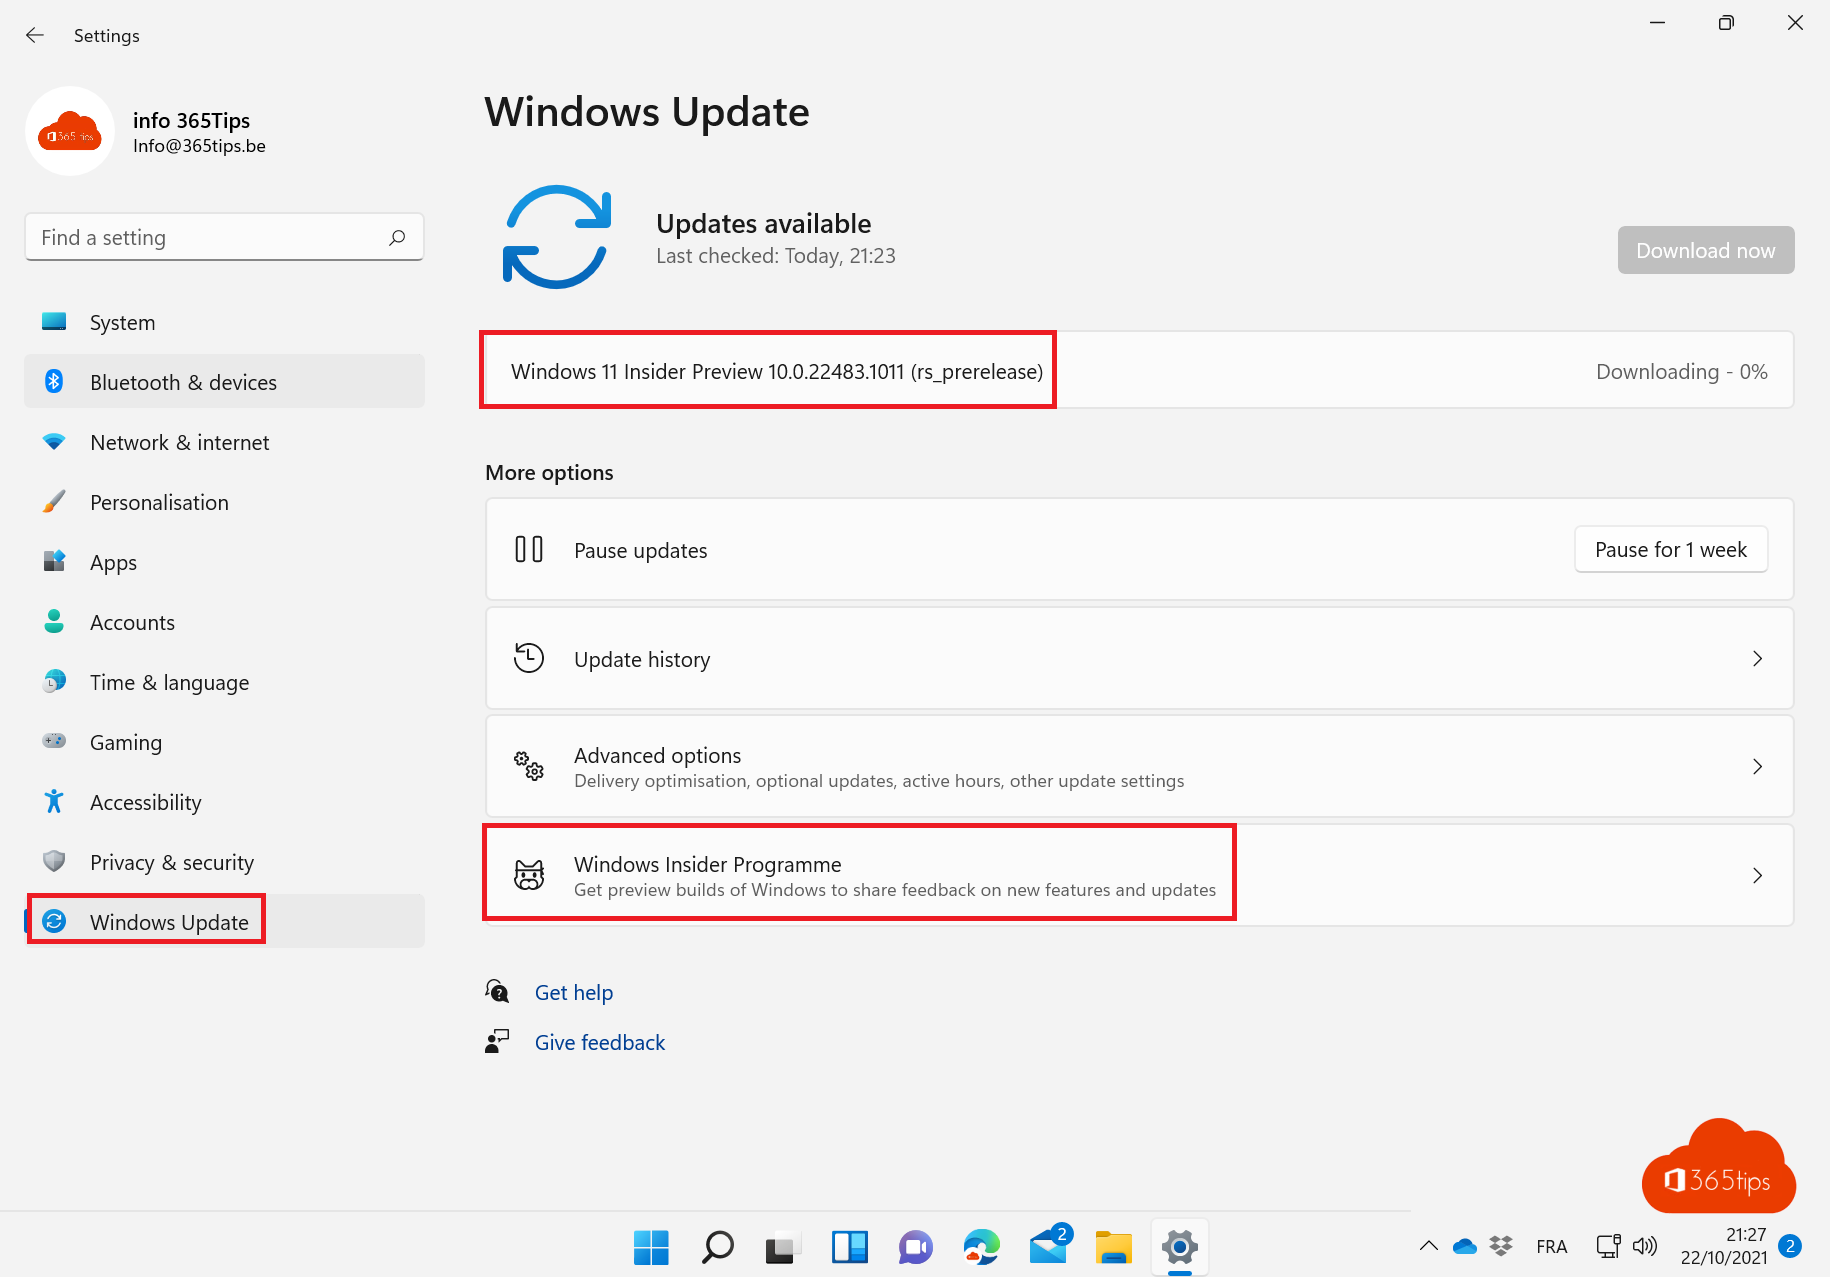 Cómo participar en el programa Microsoft Windows Insider preview - Windows 11